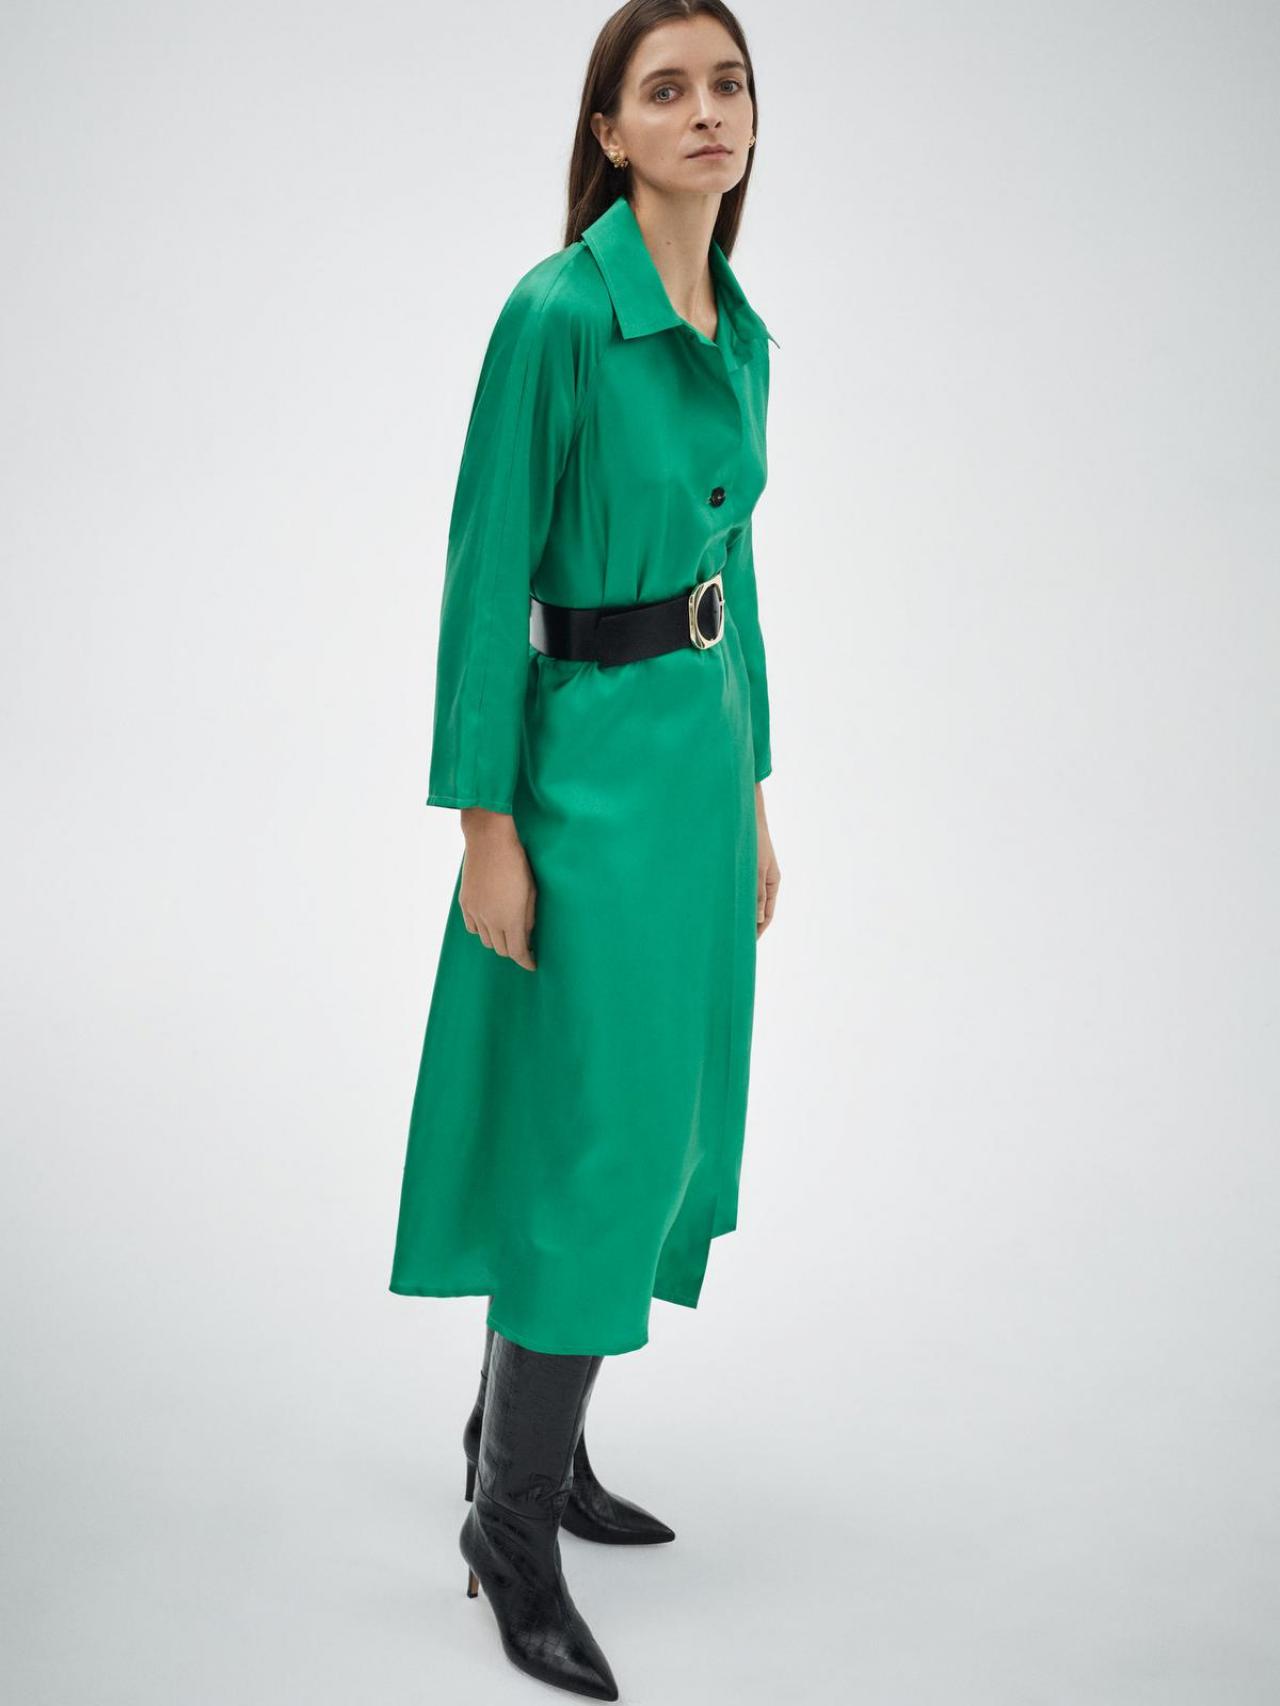 Smaragdgroene zijdeEenvoudige jurk in groene zijde, stijlvol voor het feest en ook draagbaar achteraf (495 euro), van Wright.